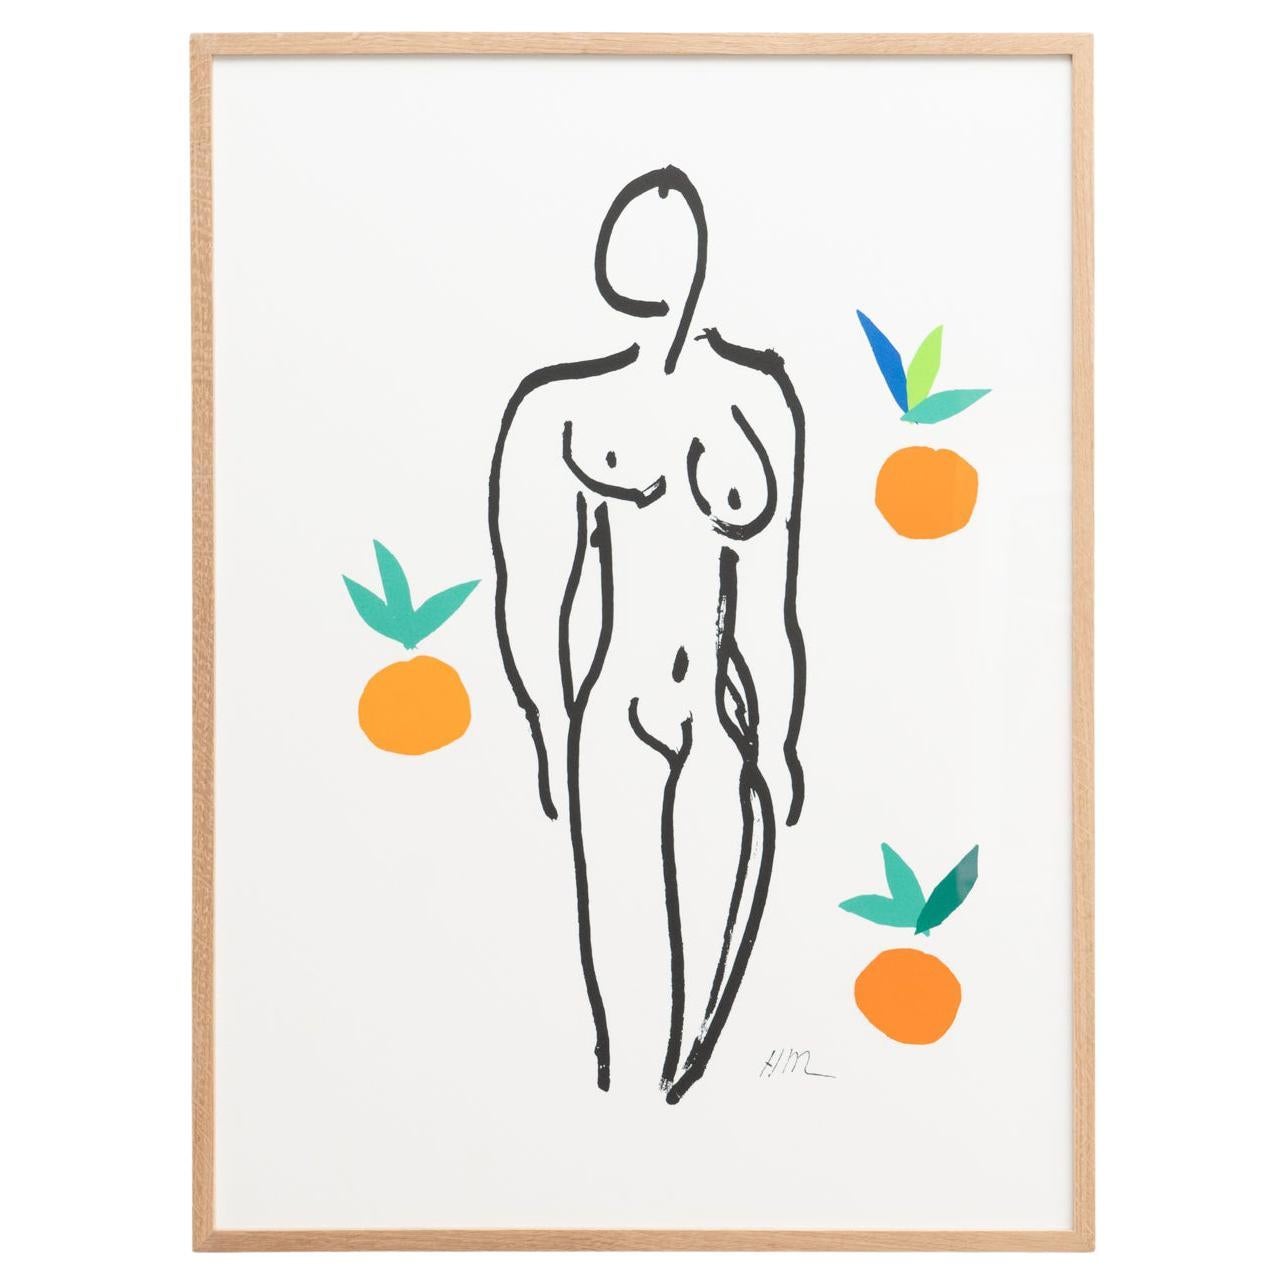 Nach Henri Matisse 'Nu Aux Orange' Lithographie, um 2007